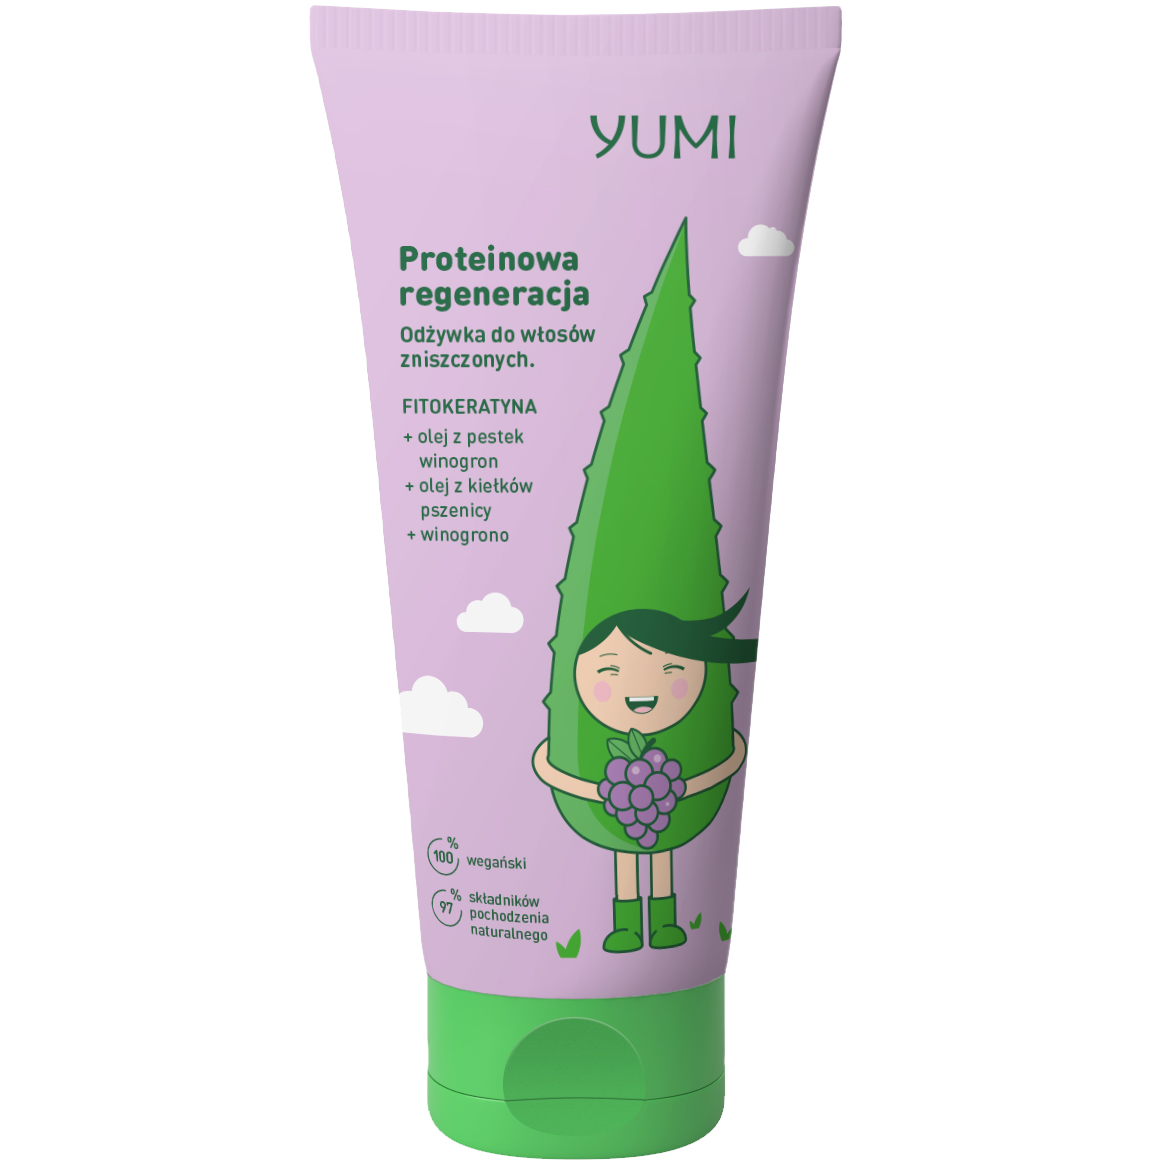 Yumi Proteinowa Regeneracja протеиновый кондиционер для волос, 200 мл